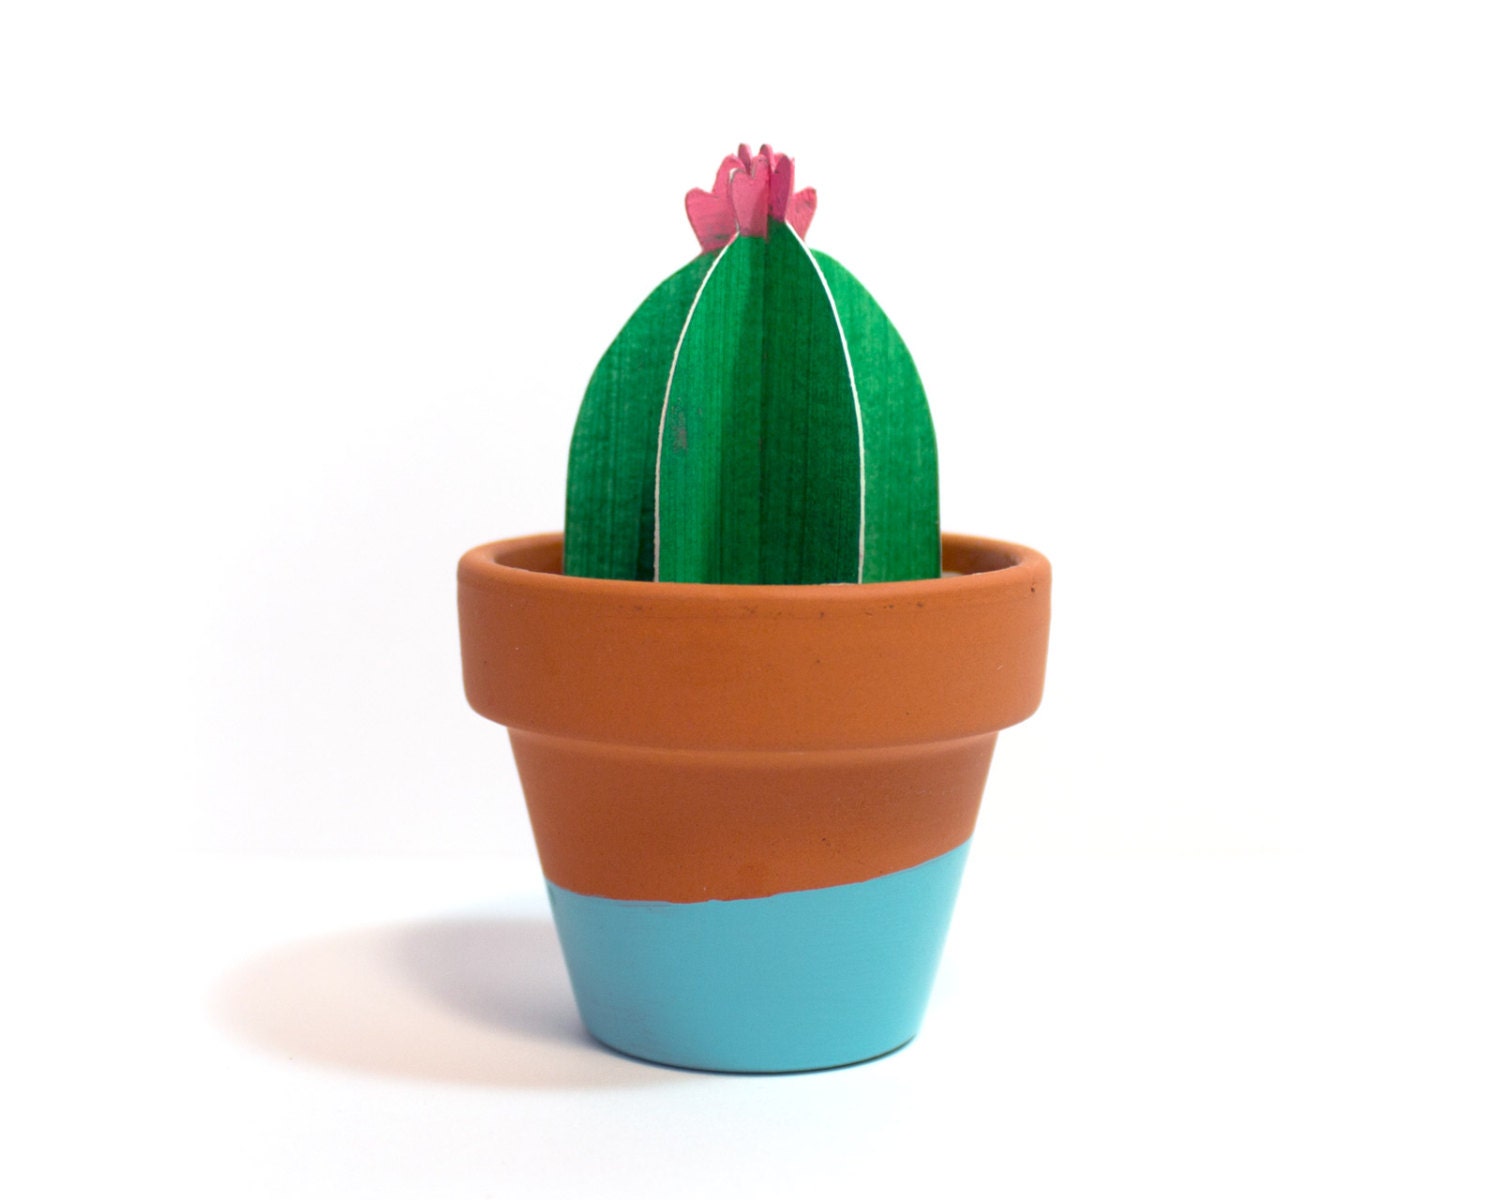 Cute 3D paper cacti in teracotta pot